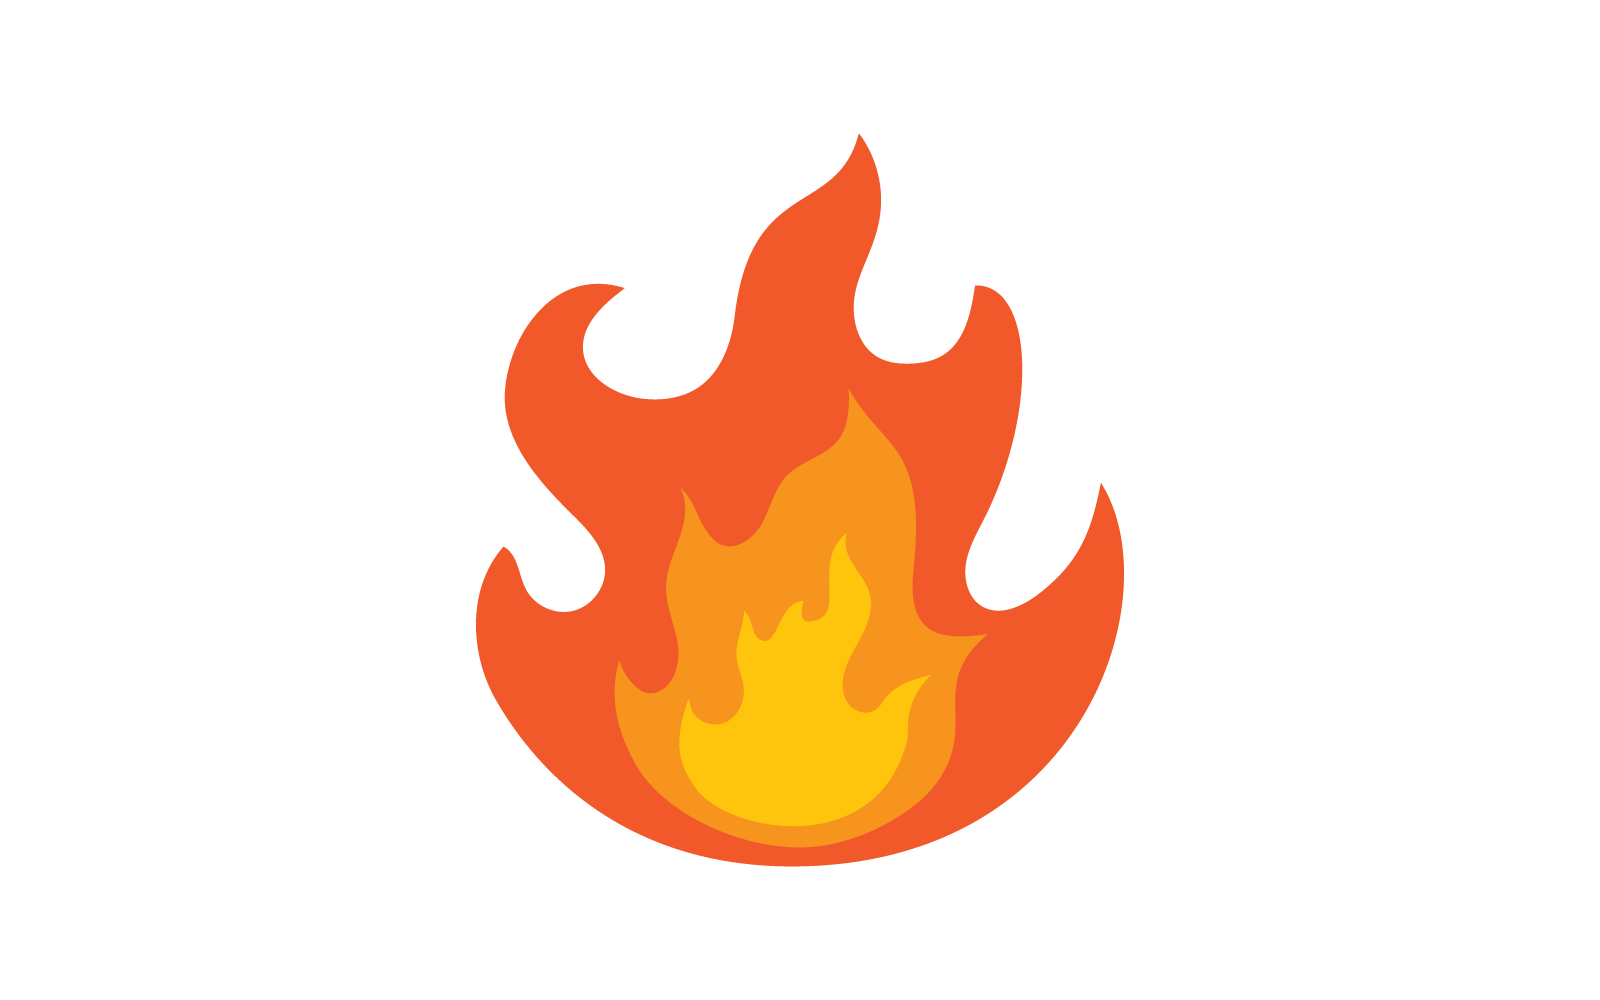 Fire flame Logo, Oil, gas and energy logo vector concept Logo Template